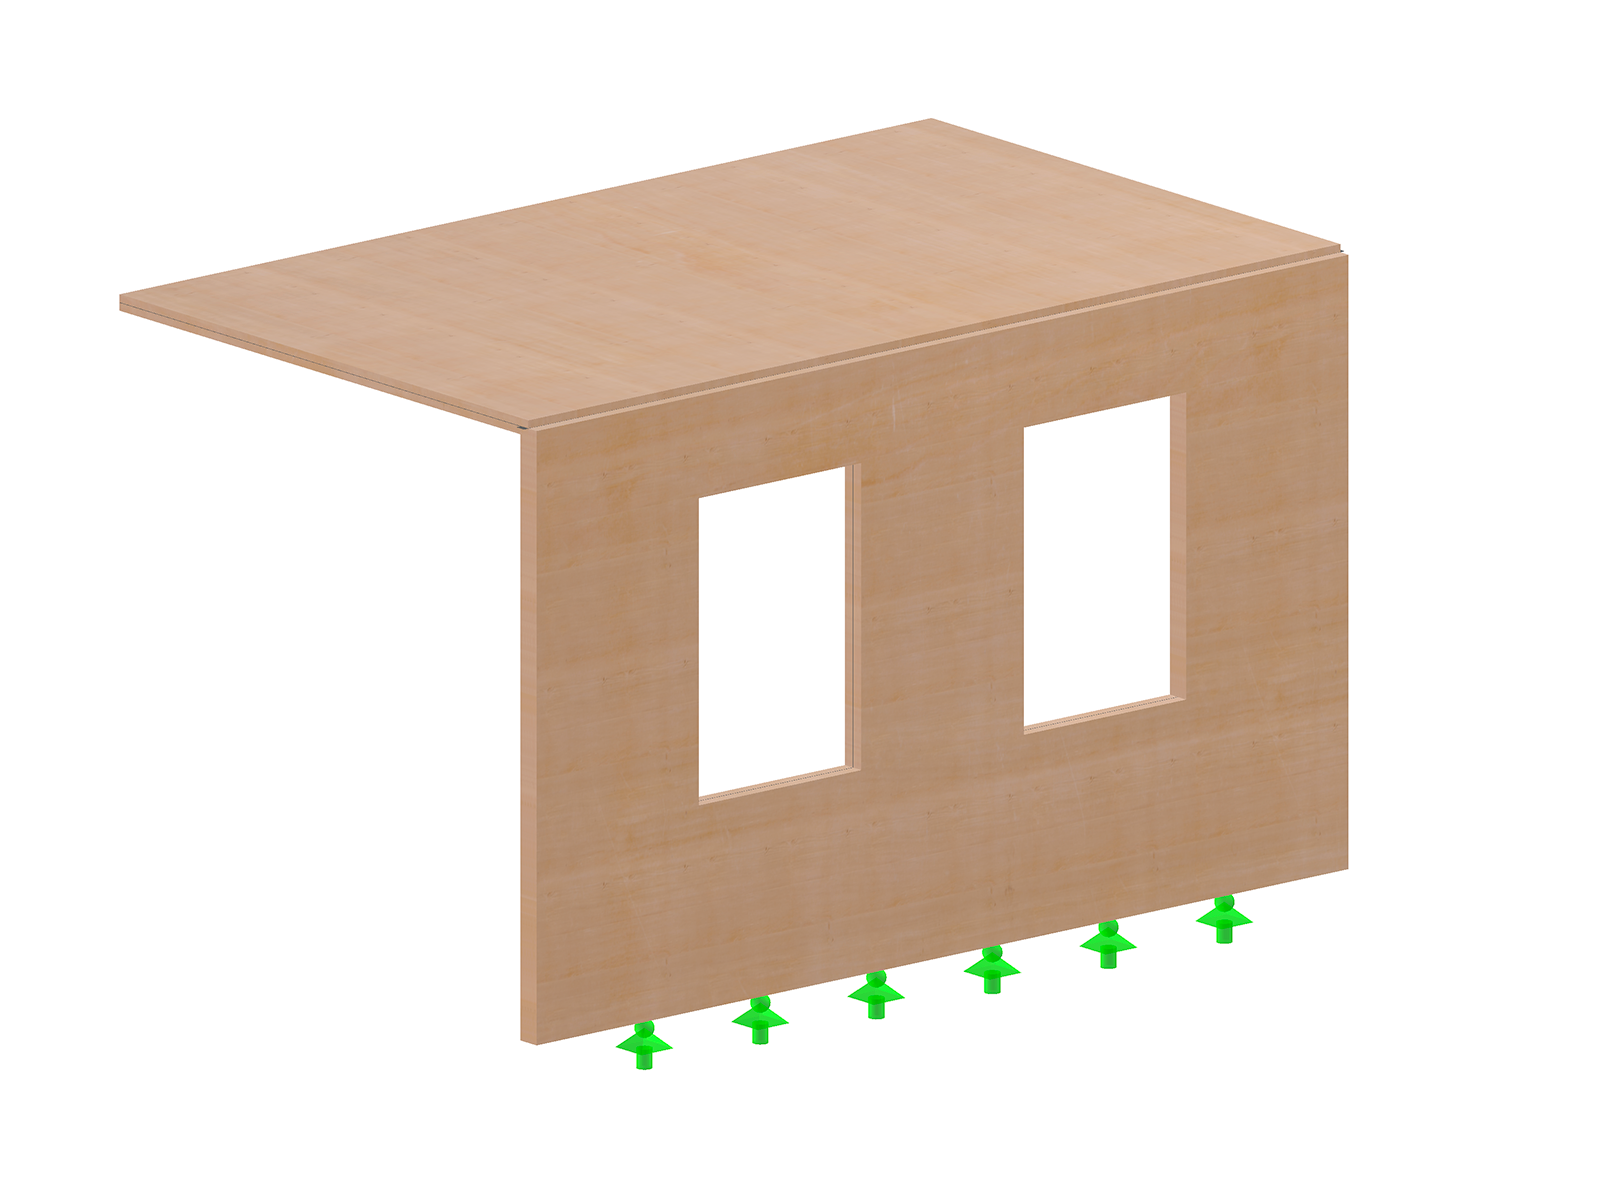 Modèle 005014 | Extension réalisée avec des composants plats en bois